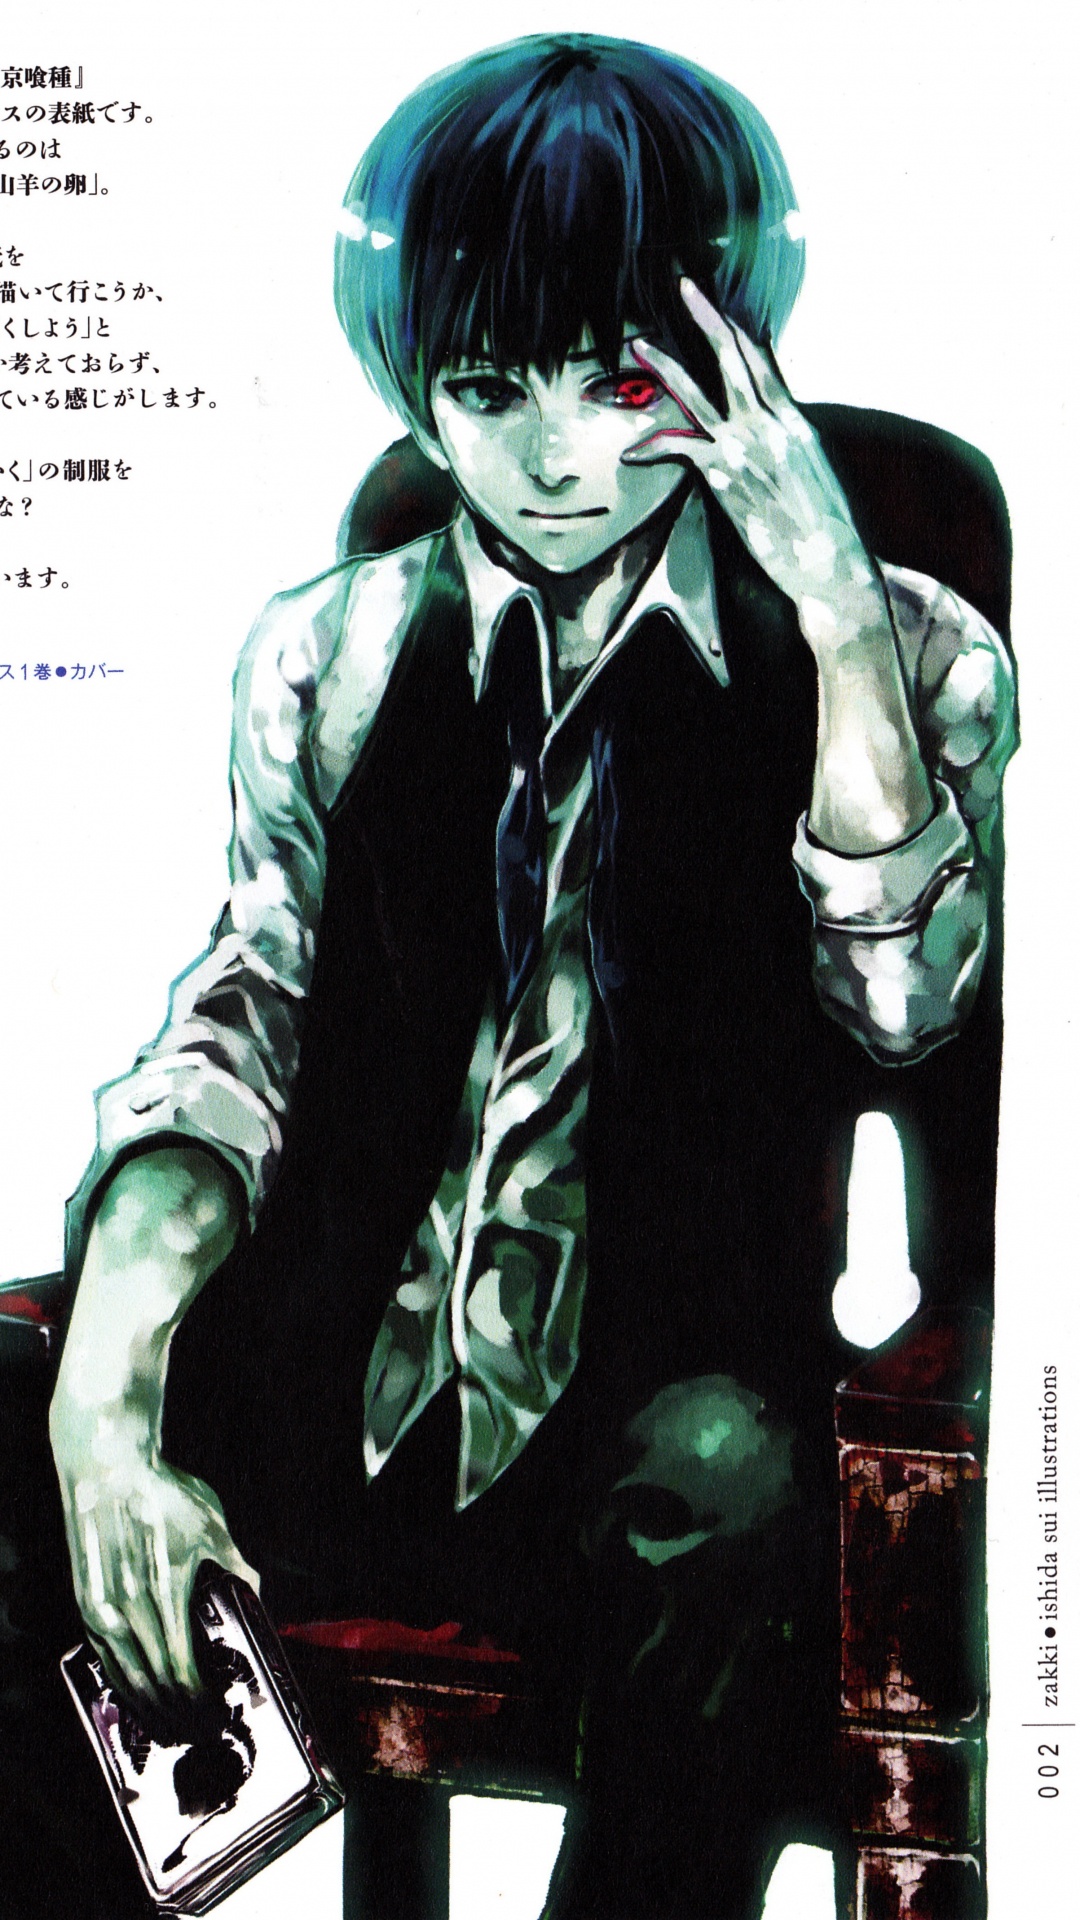 肯kaneki, 东京食尸鬼, 食尸鬼, Zakki, 虚构的人物 壁纸 1080x1920 允许